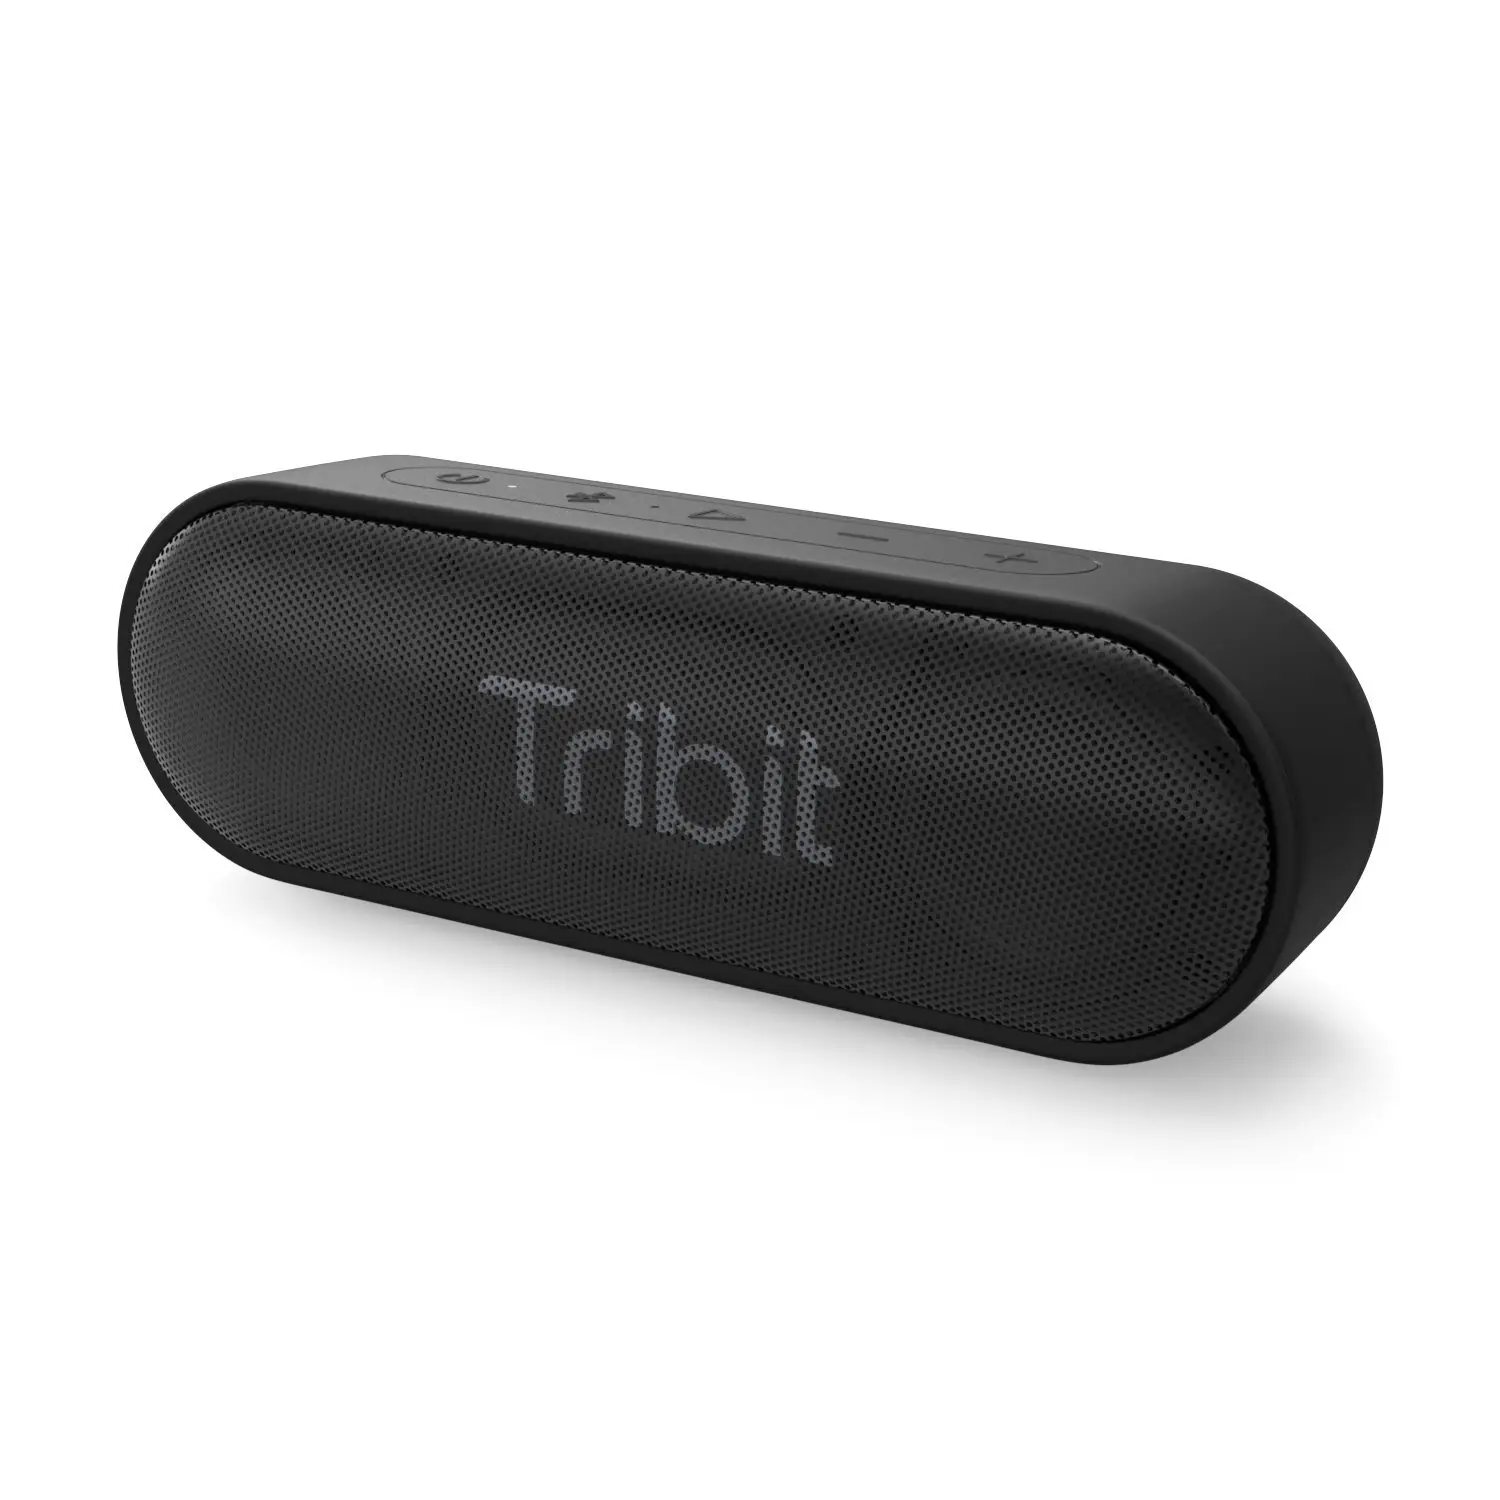 Altoparlante portatile Tribit Xsound go Wireless Speaker con potente suono più forte XBass eccezionale 24 ore